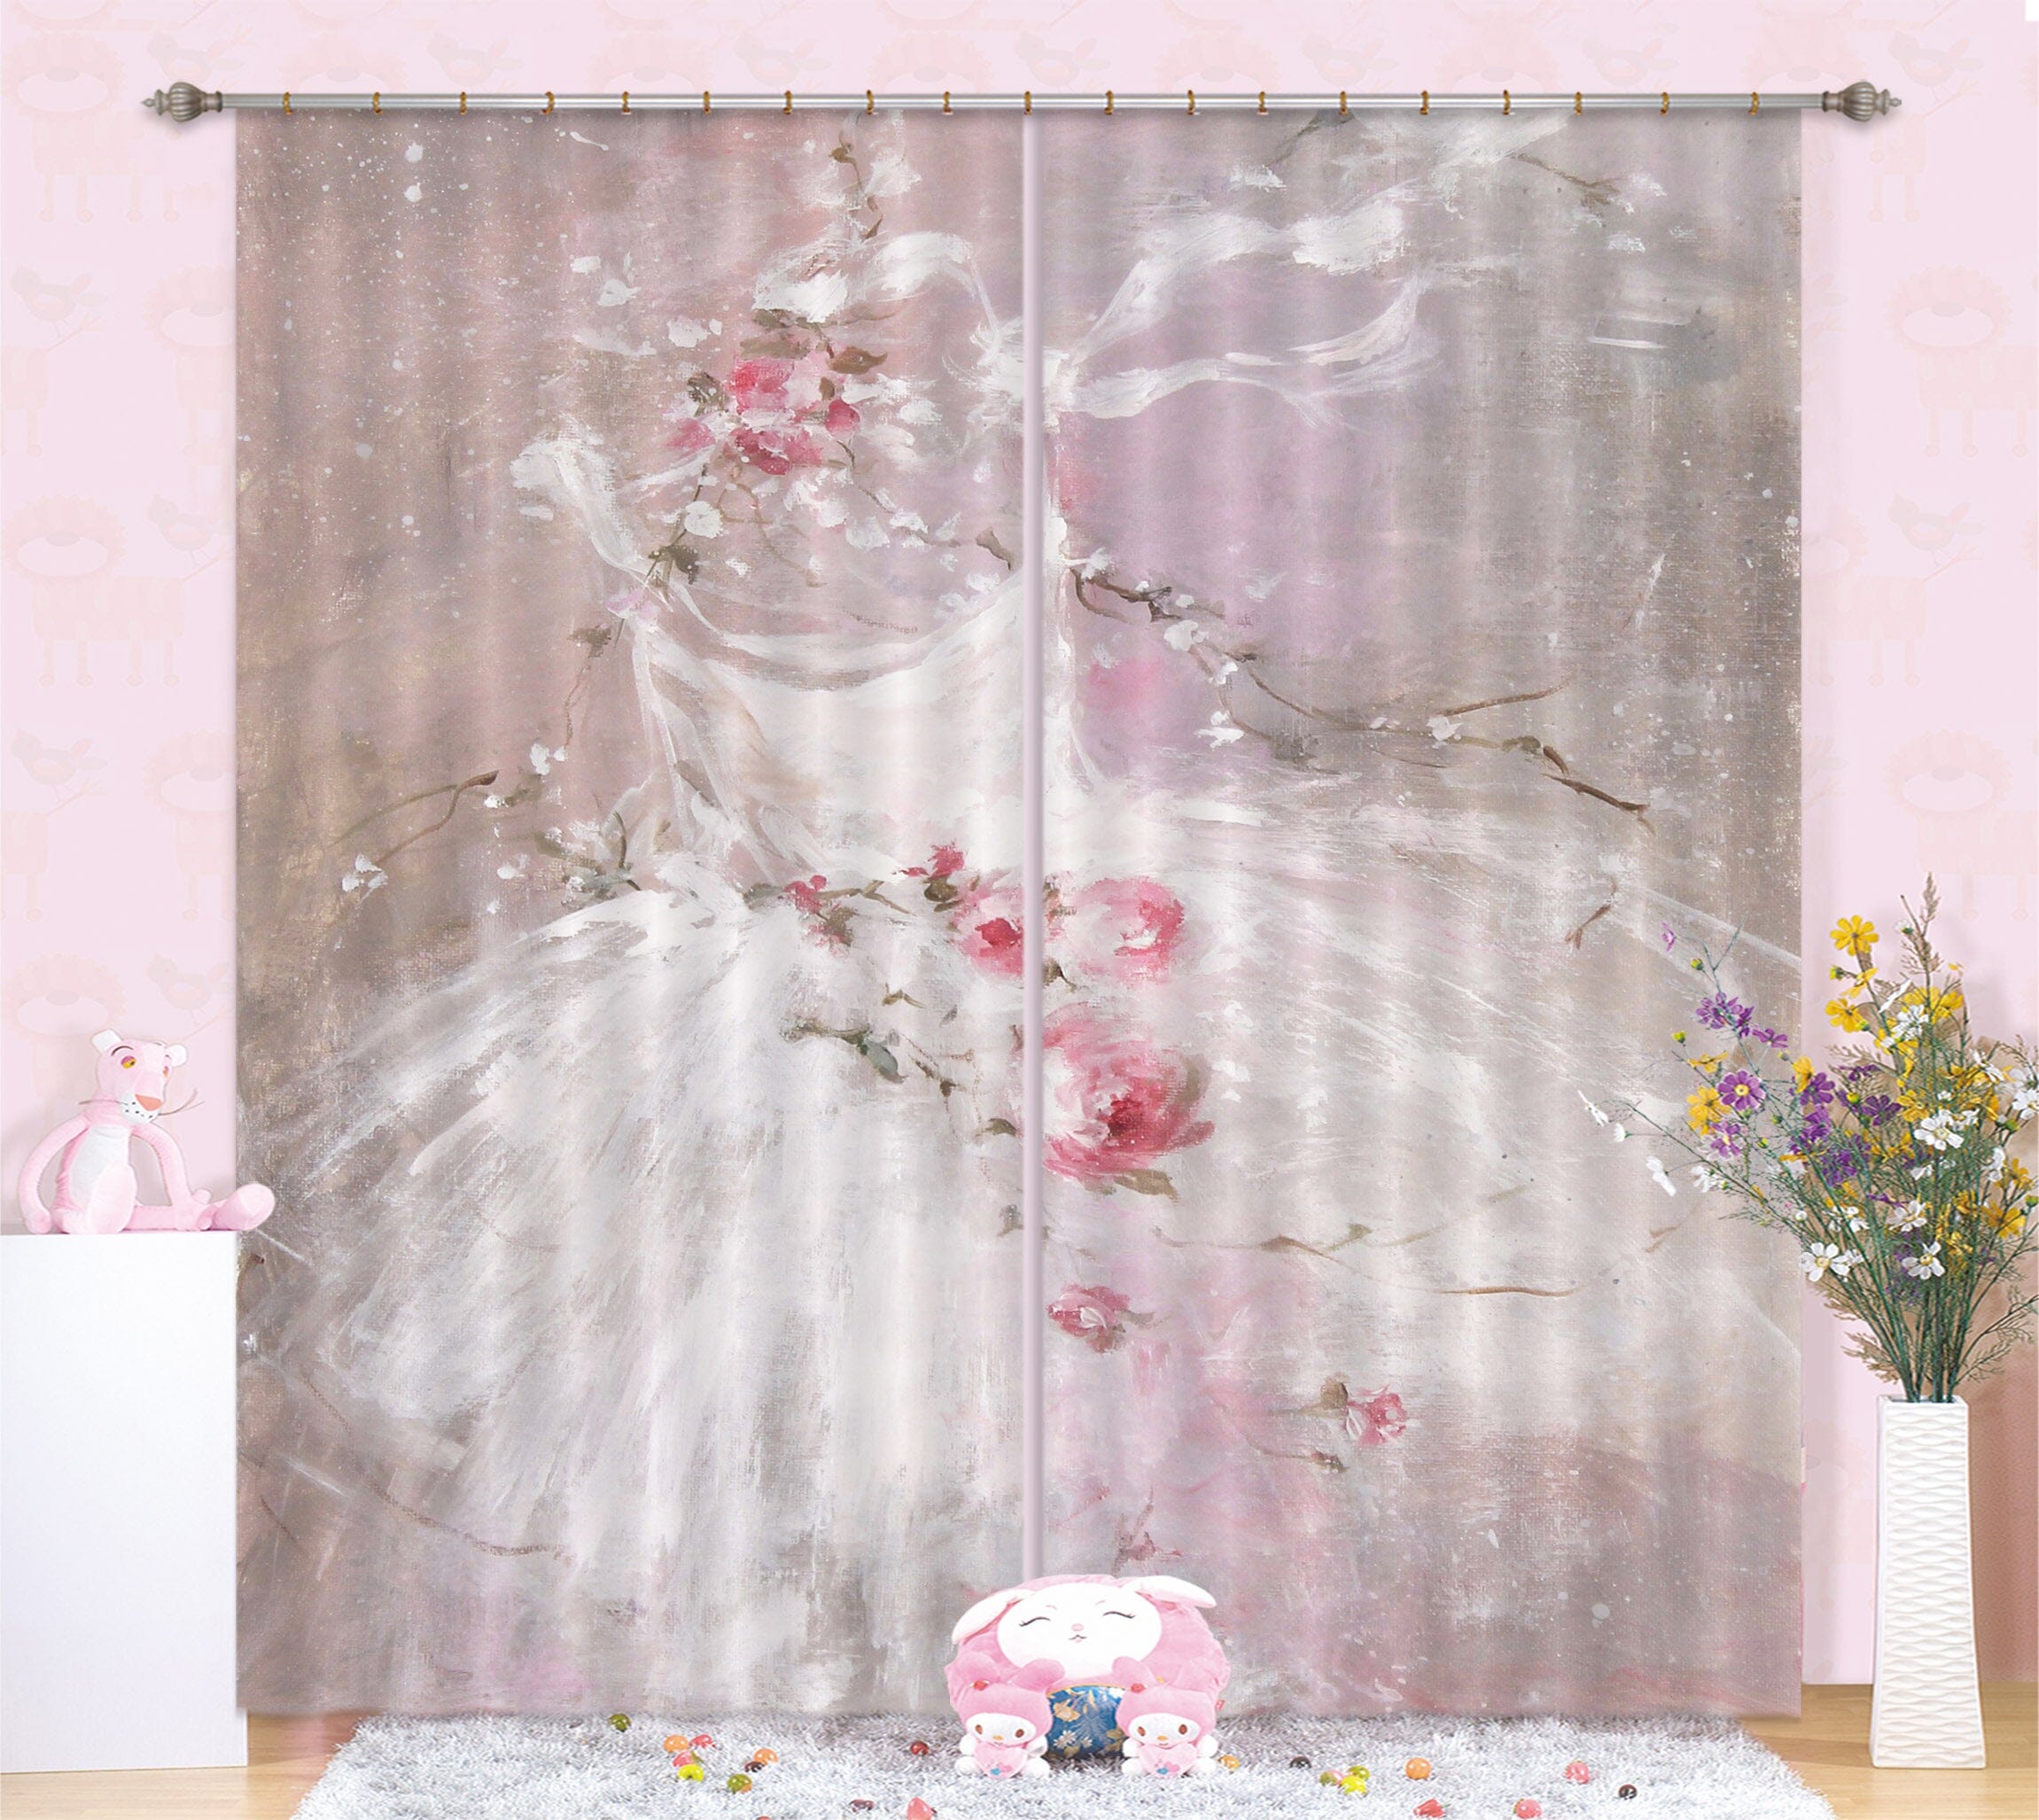 3D Pink Wedding Dress 037 Debi Coules Curtain Curtains Drapes Curtains AJ Creativity Home 